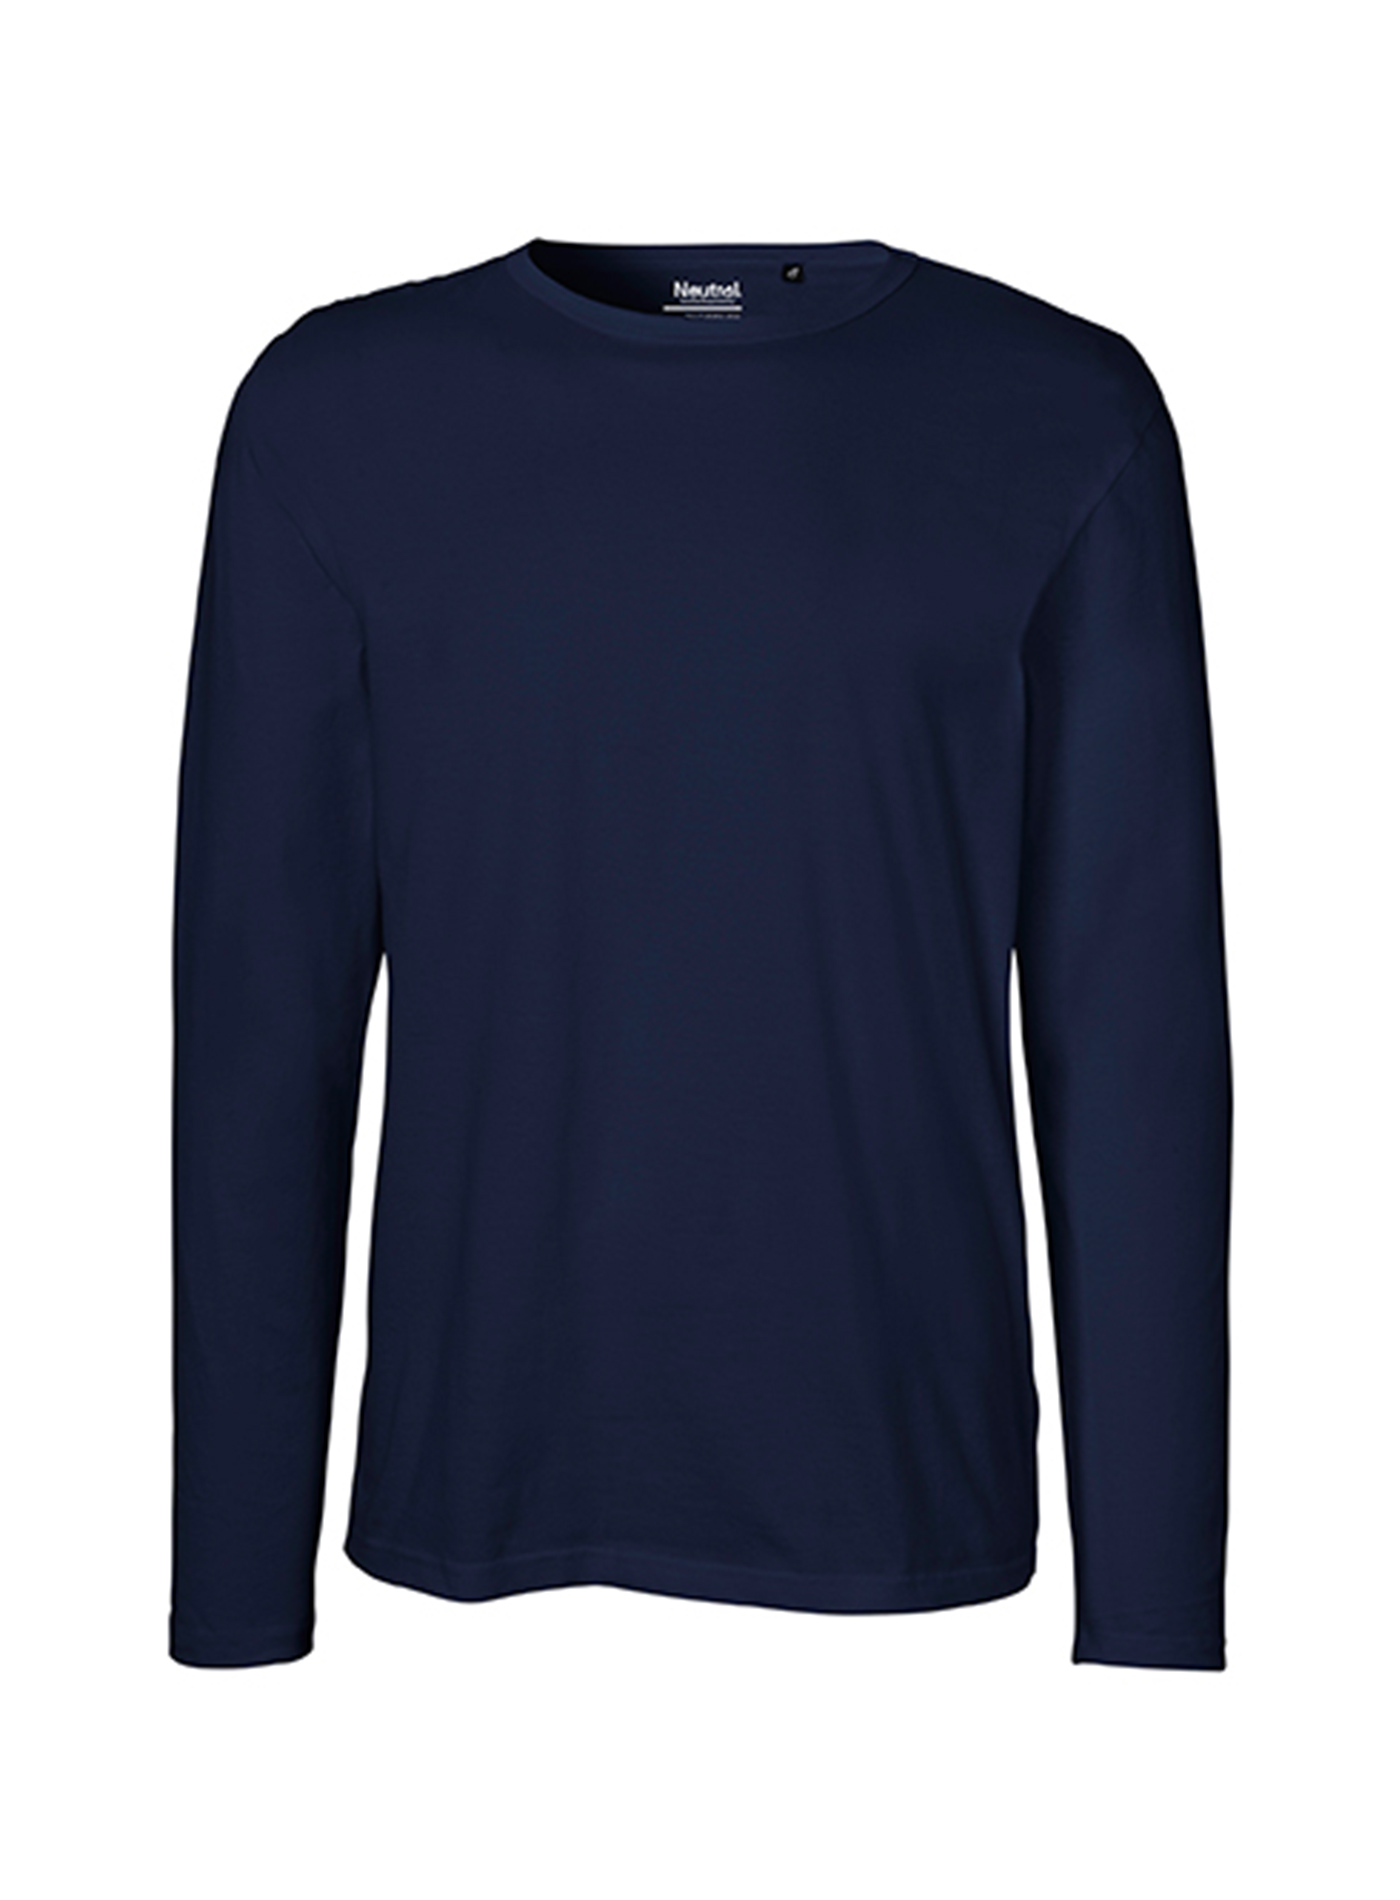 Pánské tričko s dlouhým rukávem Neutral - Námořní modrá L